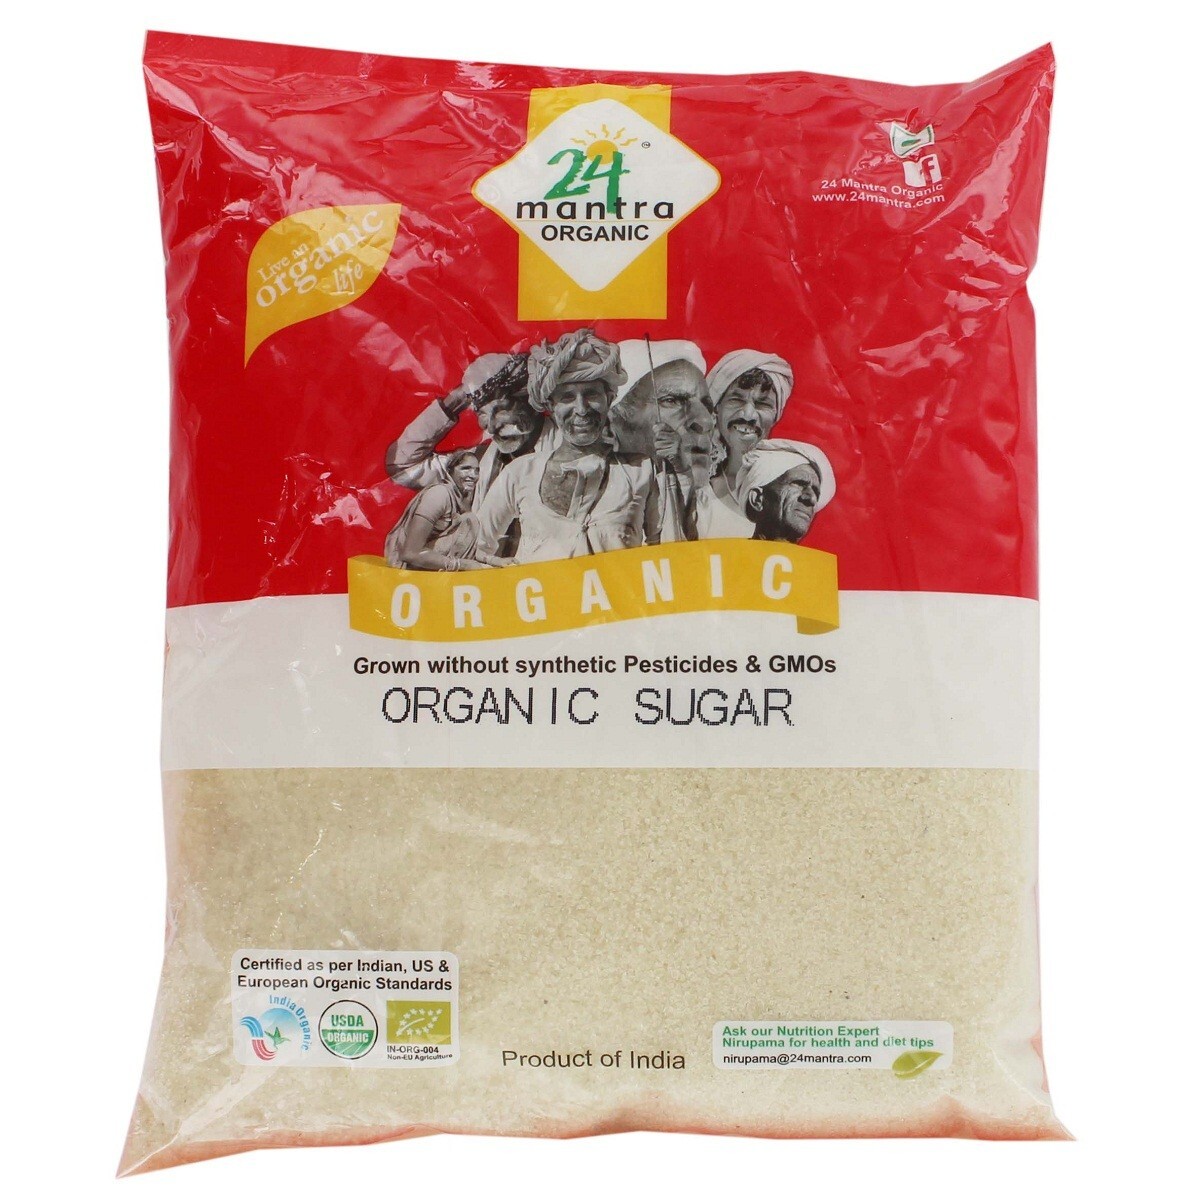 24 Mantra Organic Sugar 1kg